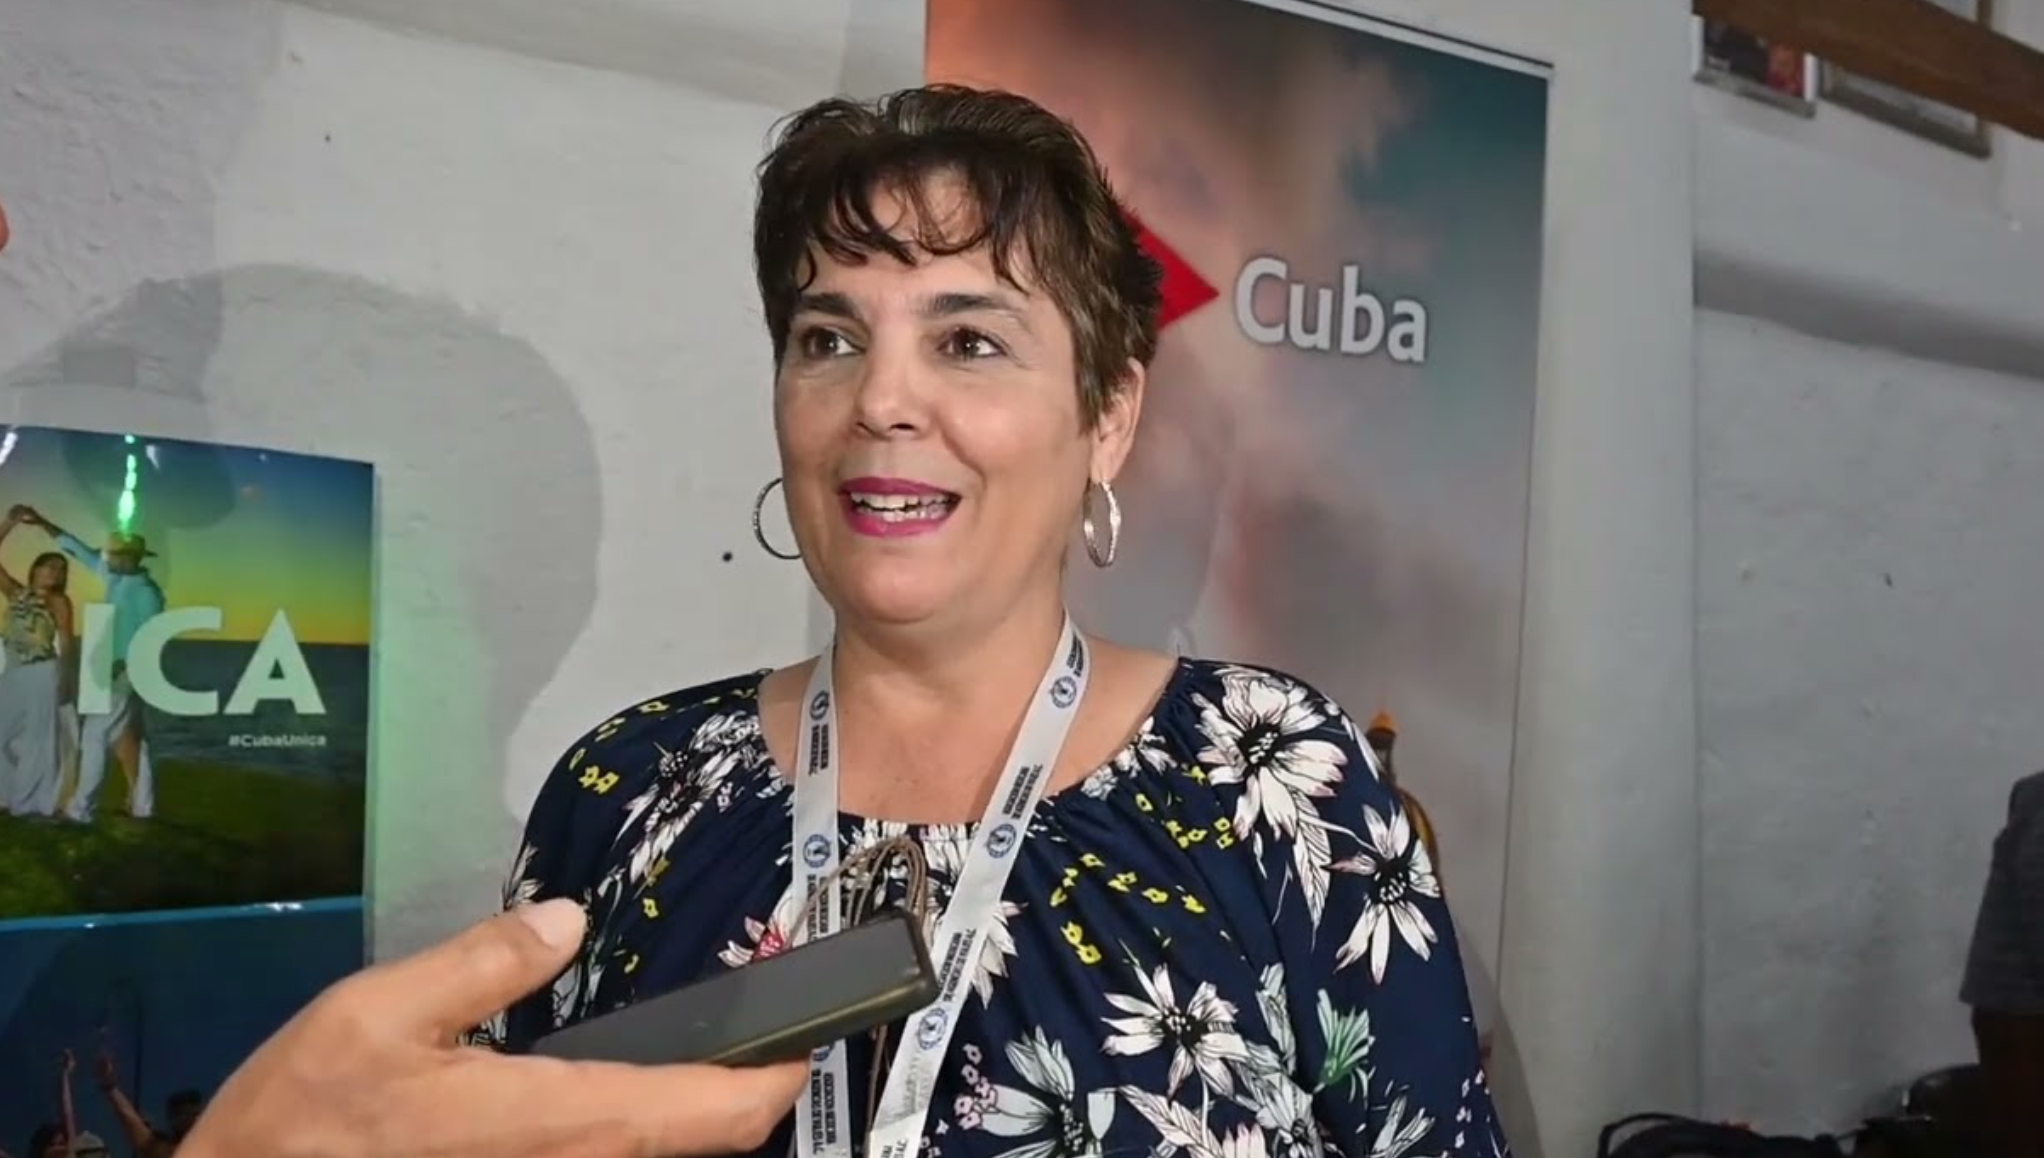 “Para conocer a Cuba hay que entenderla”: Xonia Beltrán Vivero